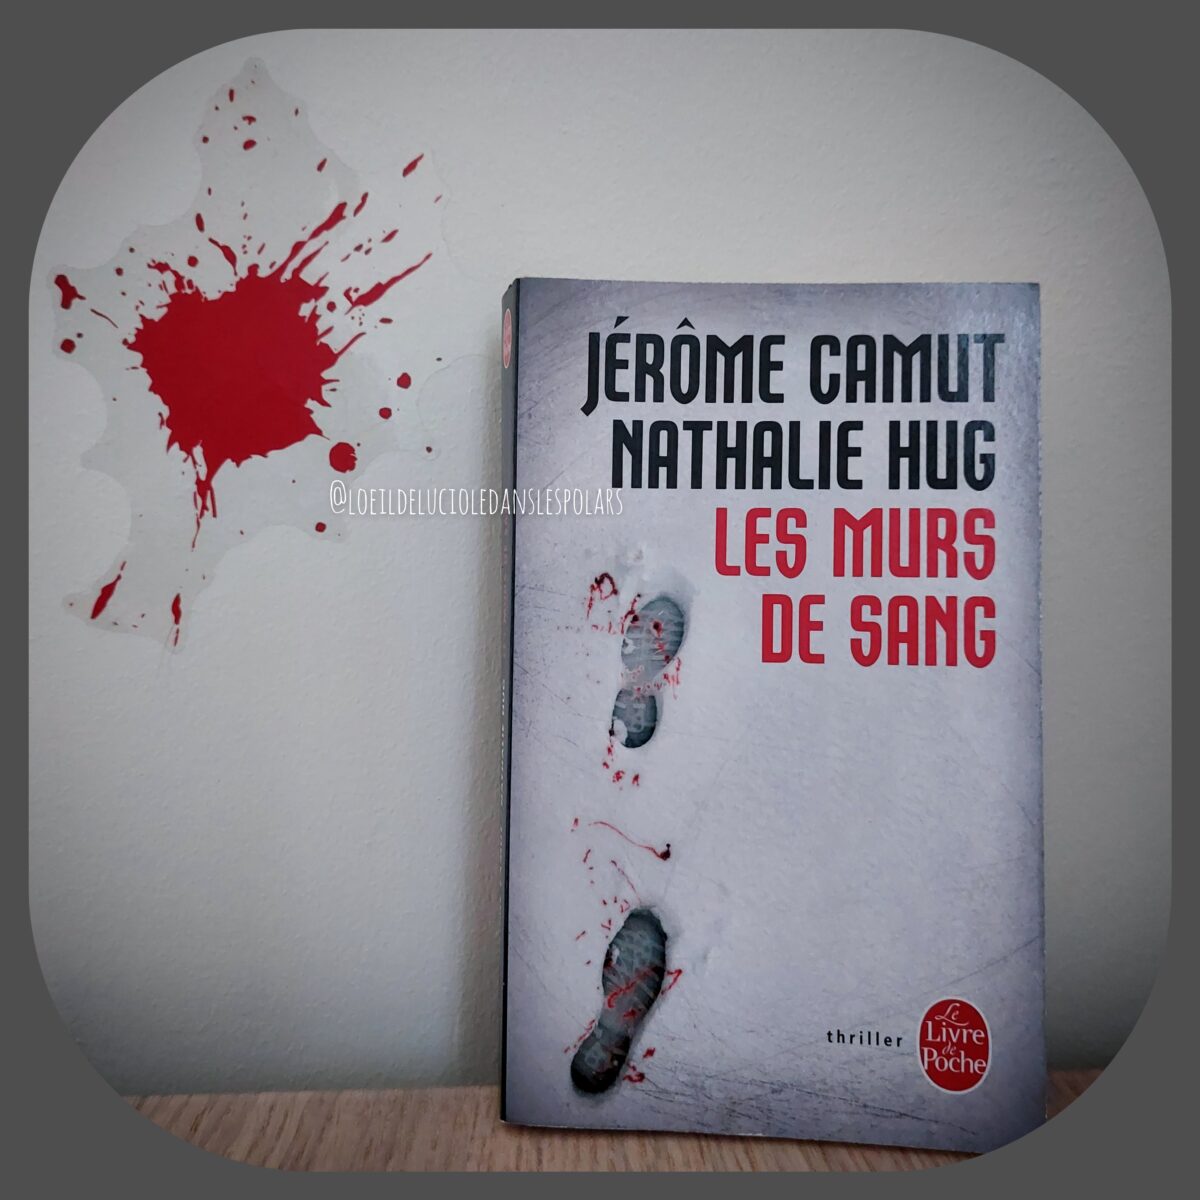 Les murs de sang de Jérôme Camut et Nathalie Hug